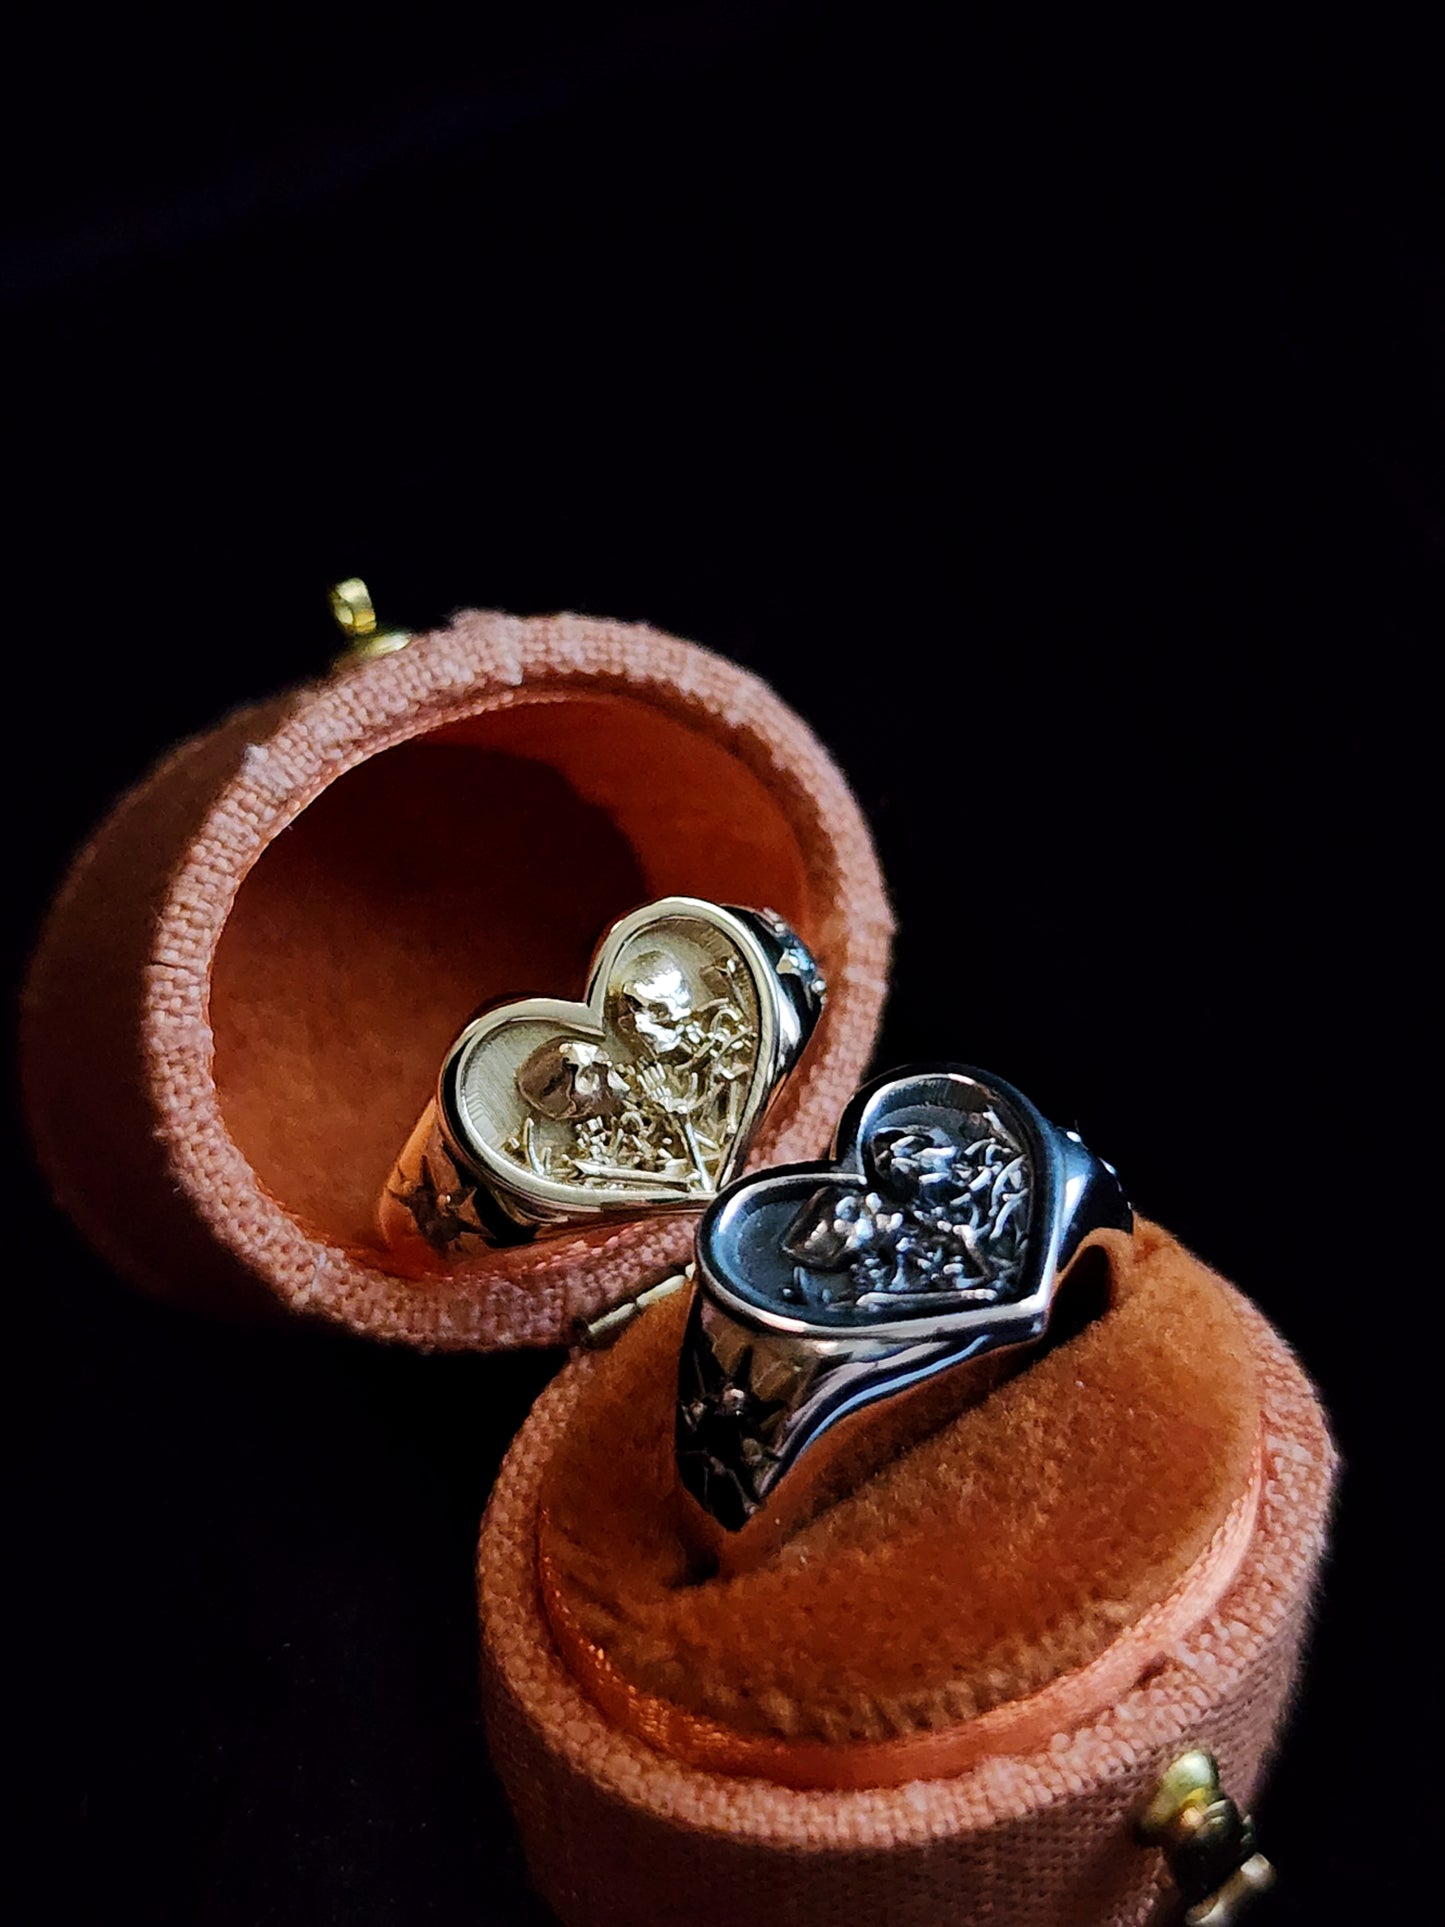 14k Gold Heart Signet Ring The Lovers Skeleton Final Embrace - Gothic Romantic Engagement Ring Salt & Pepper Diamonds Memento Mori Modern Mourning